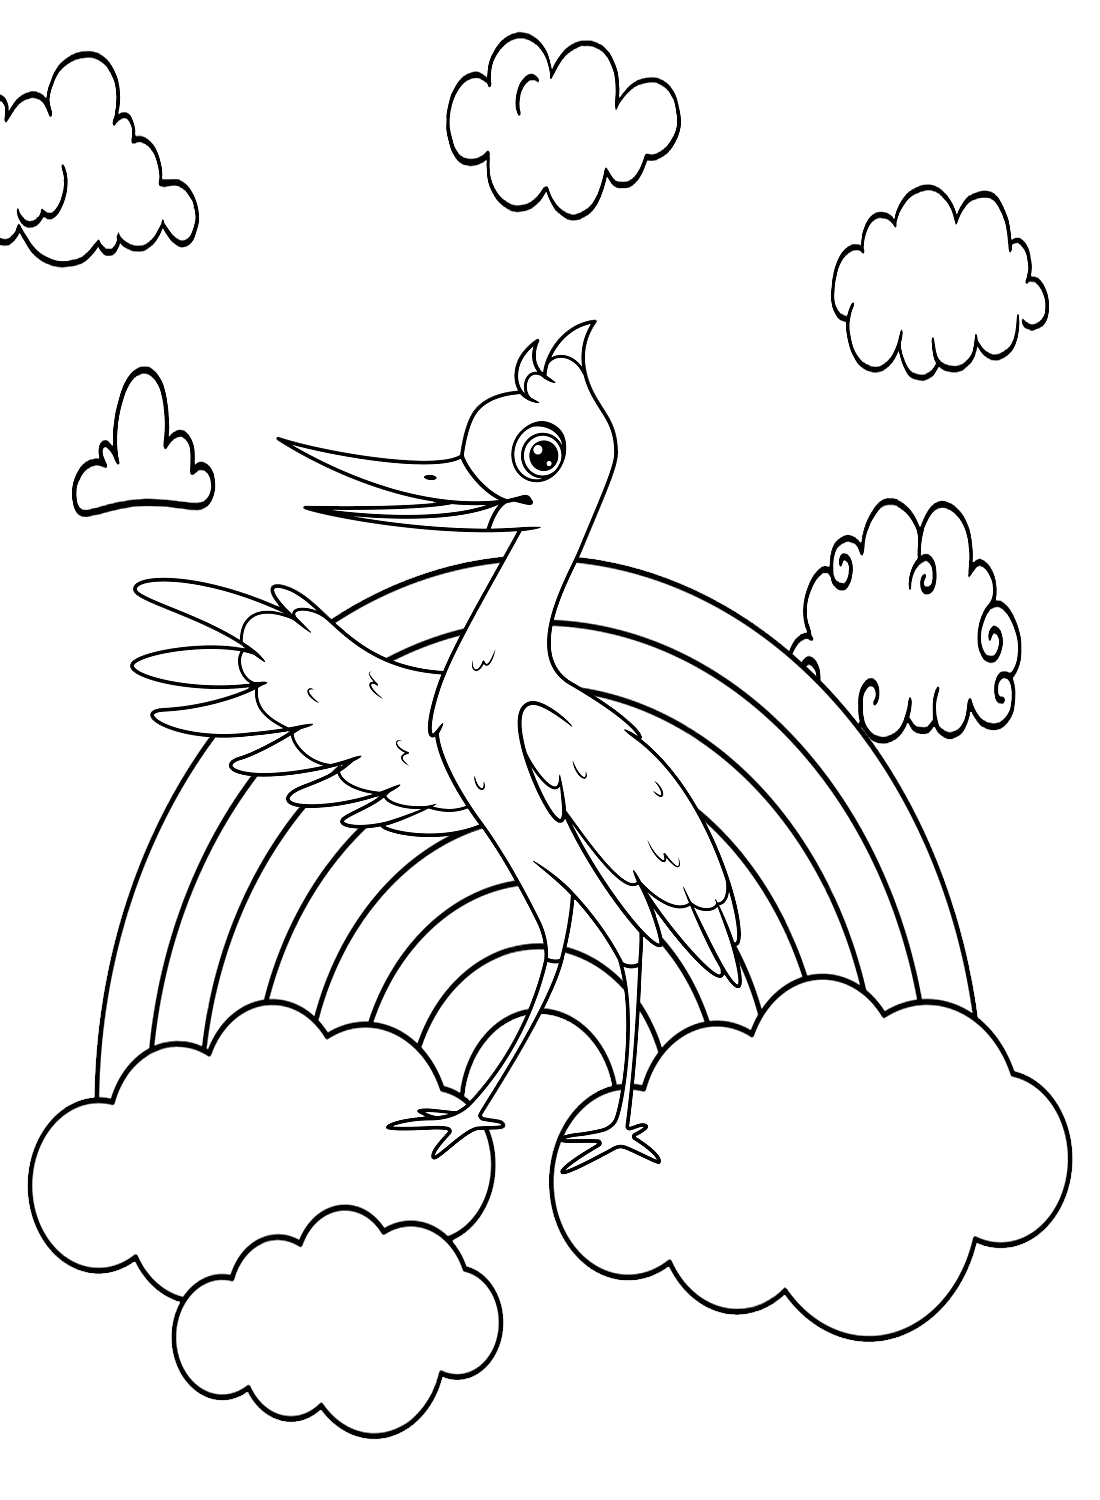 Аист с радугой и облаками от Stork